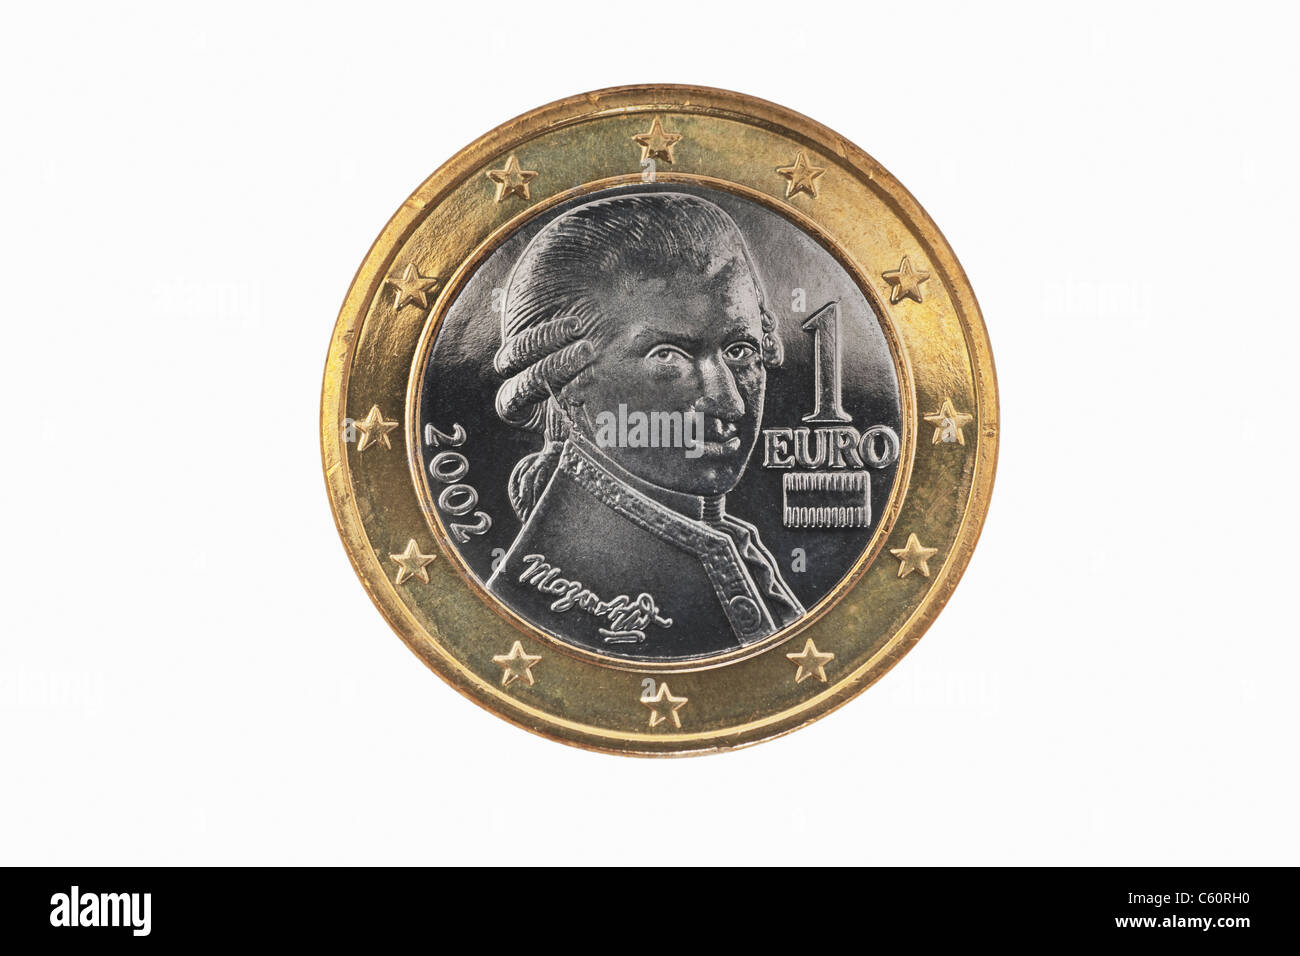 Detailansicht der Rückseite mit 1- Euro Münze aus Österreich | photo détail d'un verso d'une pièce de 1 Euro de l'Autriche Banque D'Images